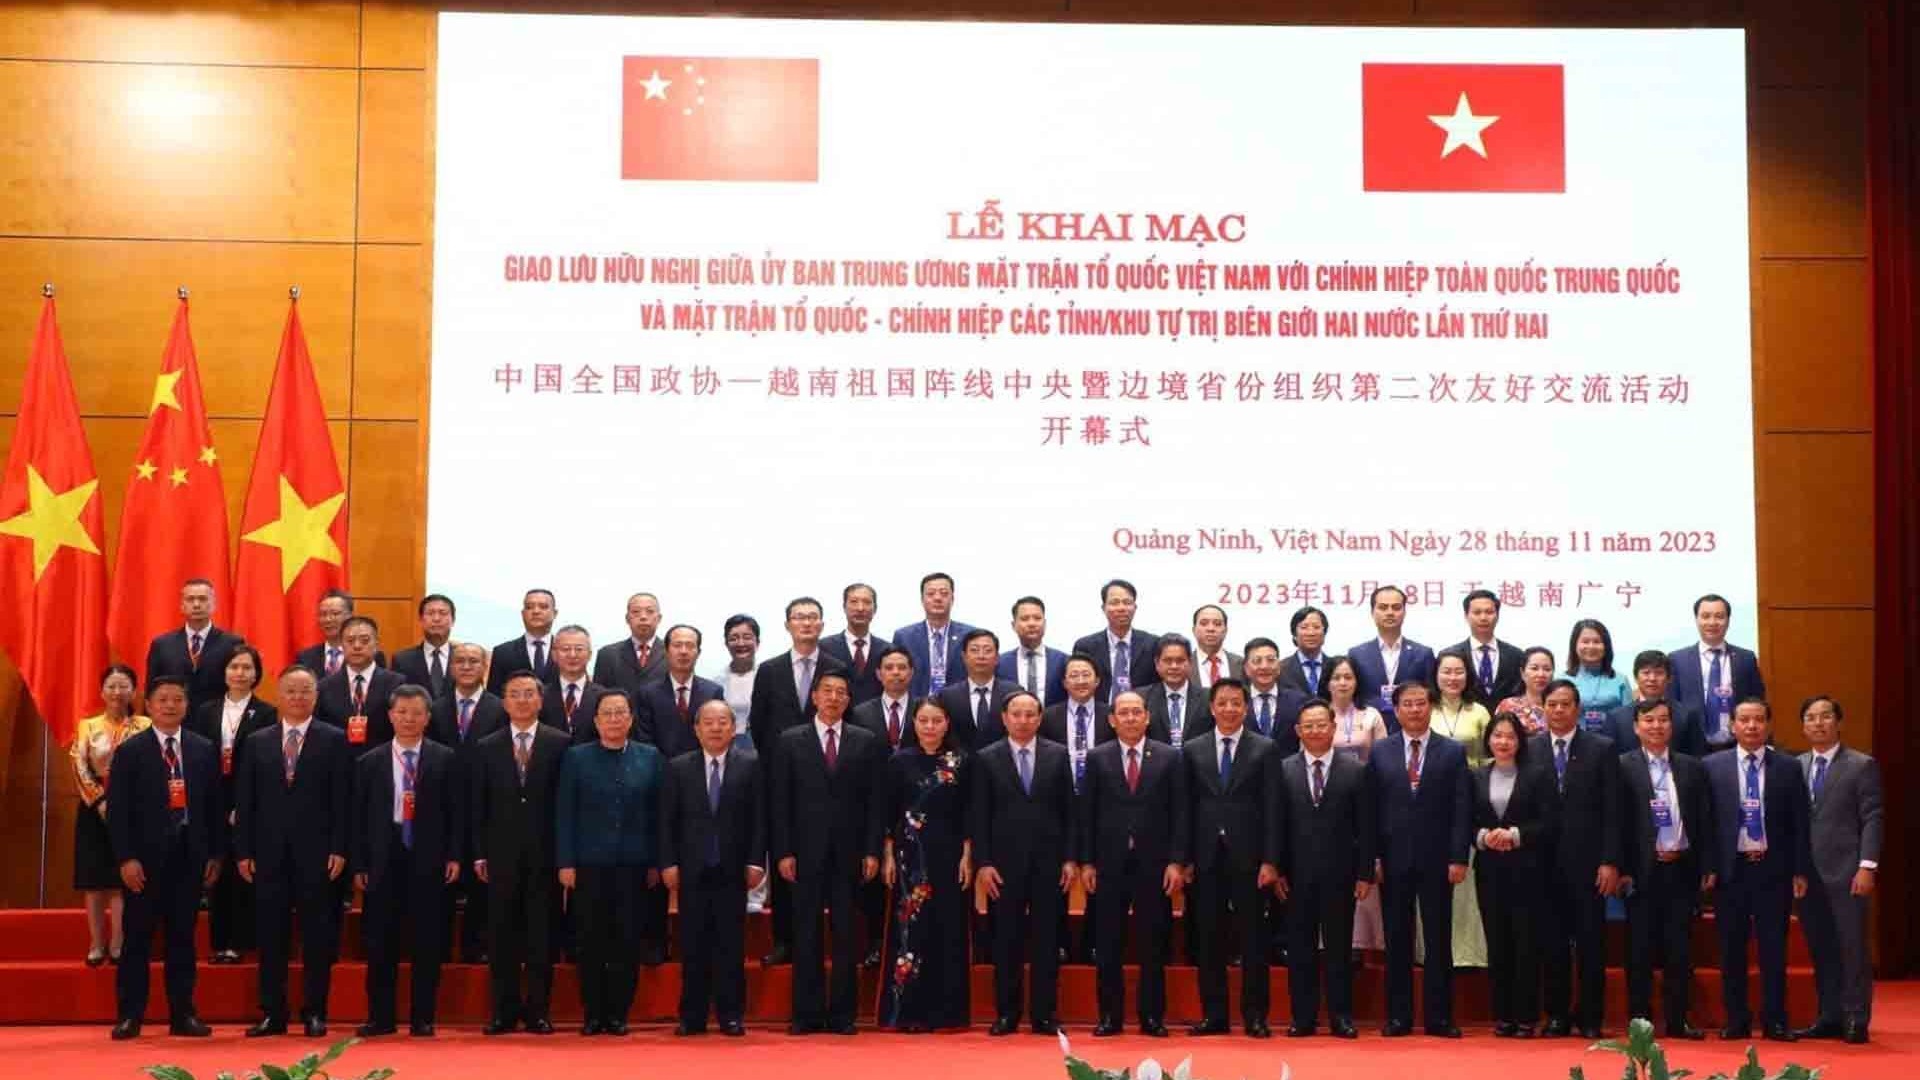 Giao lưu hữu nghị giữa Ủy ban Trung ương Mặt trận Tổ quốc Việt Nam với Chính hiệp toàn quốc Trung Quốc